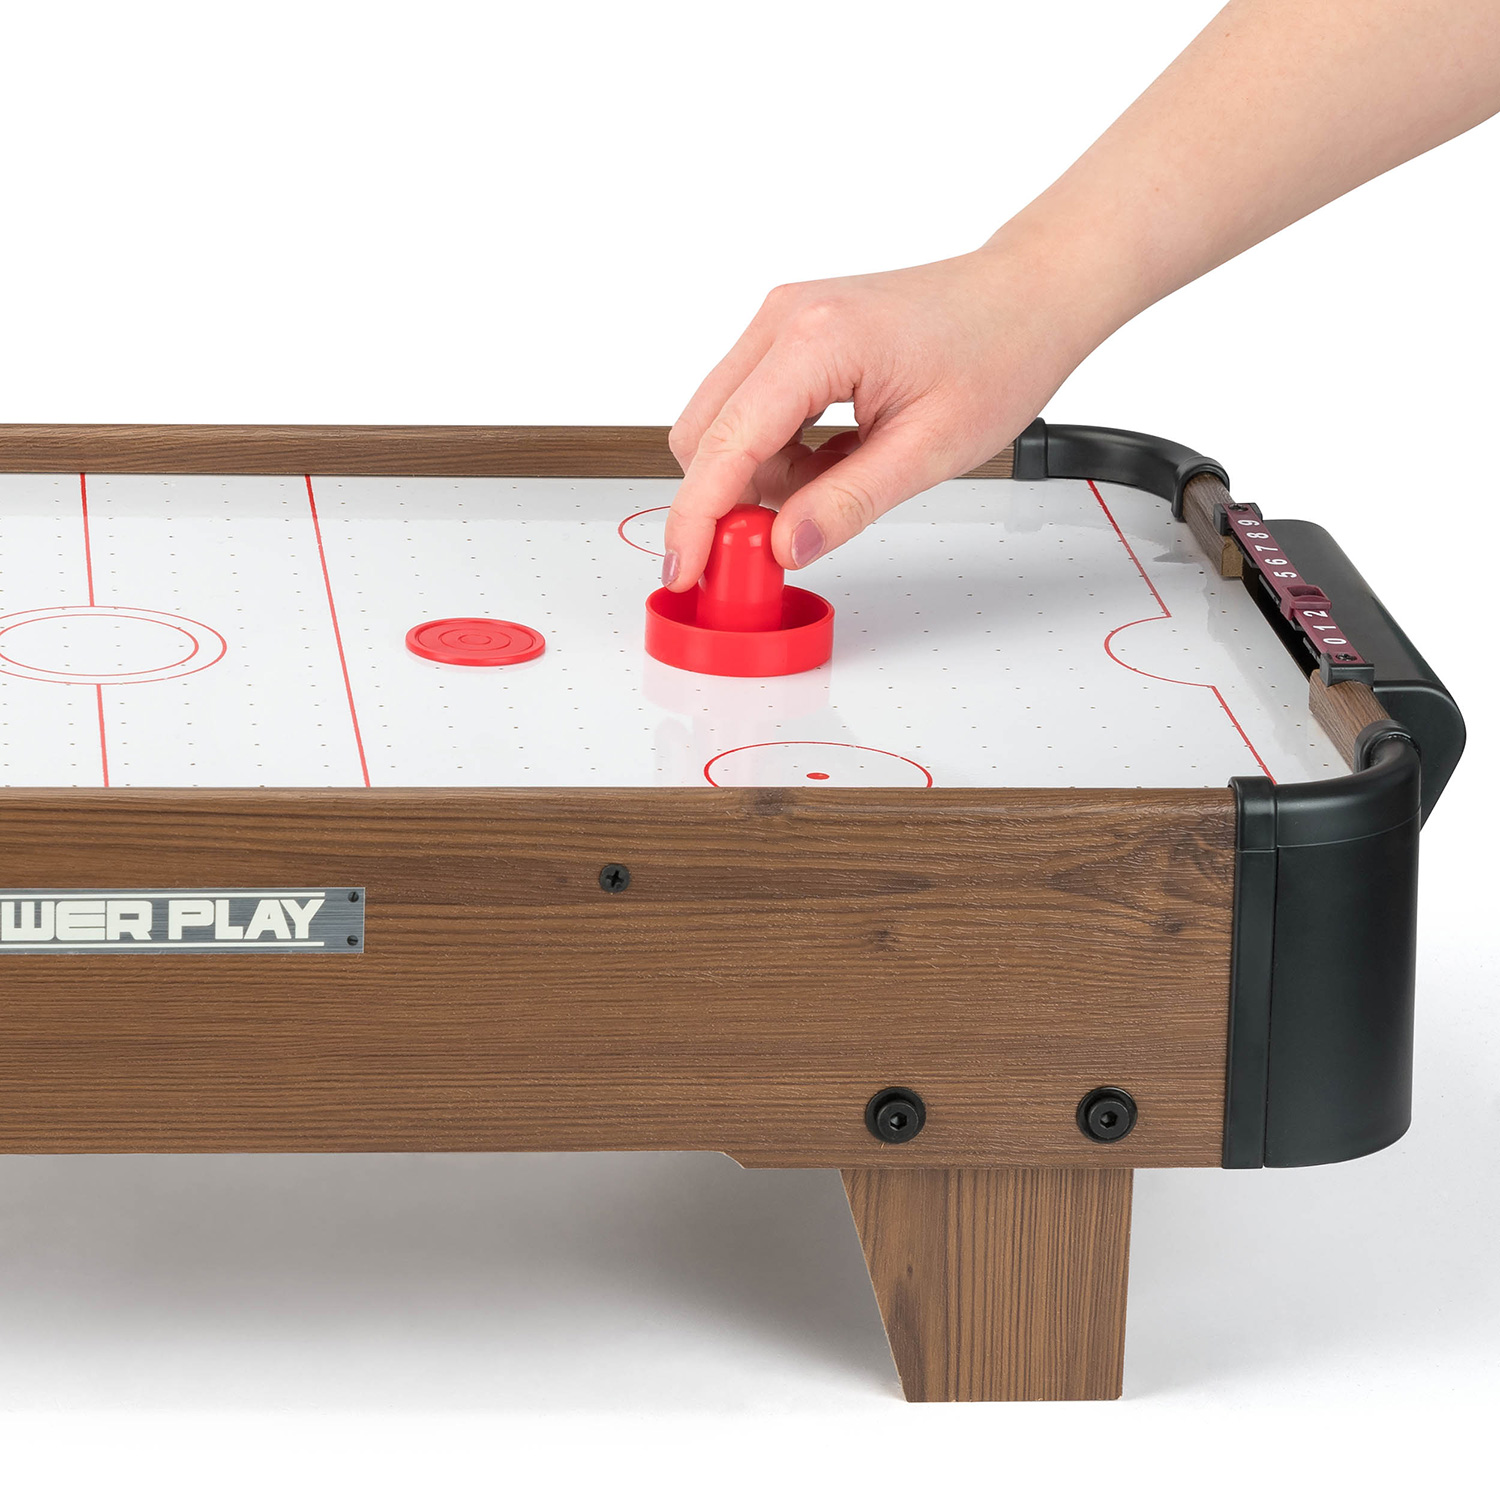 Toyrific Air Hockey Tisch Power Play